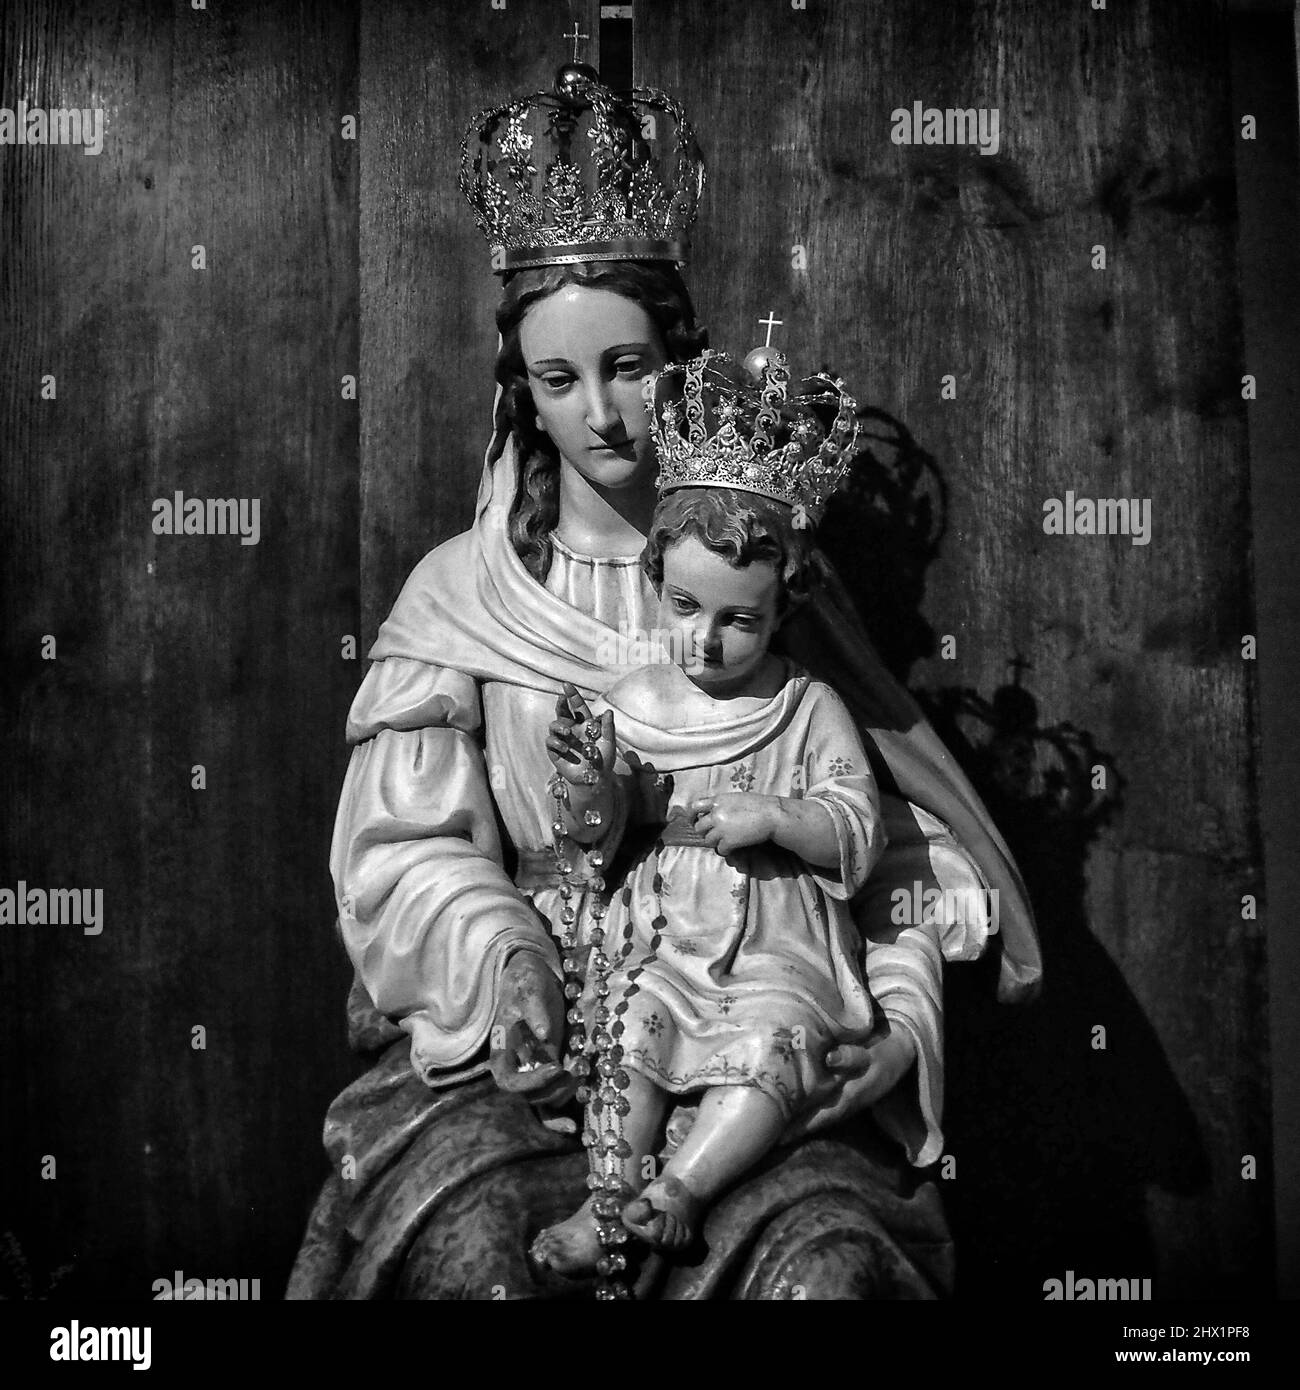 Vierge Marie avec la statue de bébé Jésus dans une église catholique - Photographie religieuse des beaux-arts noir et blanc Banque D'Images